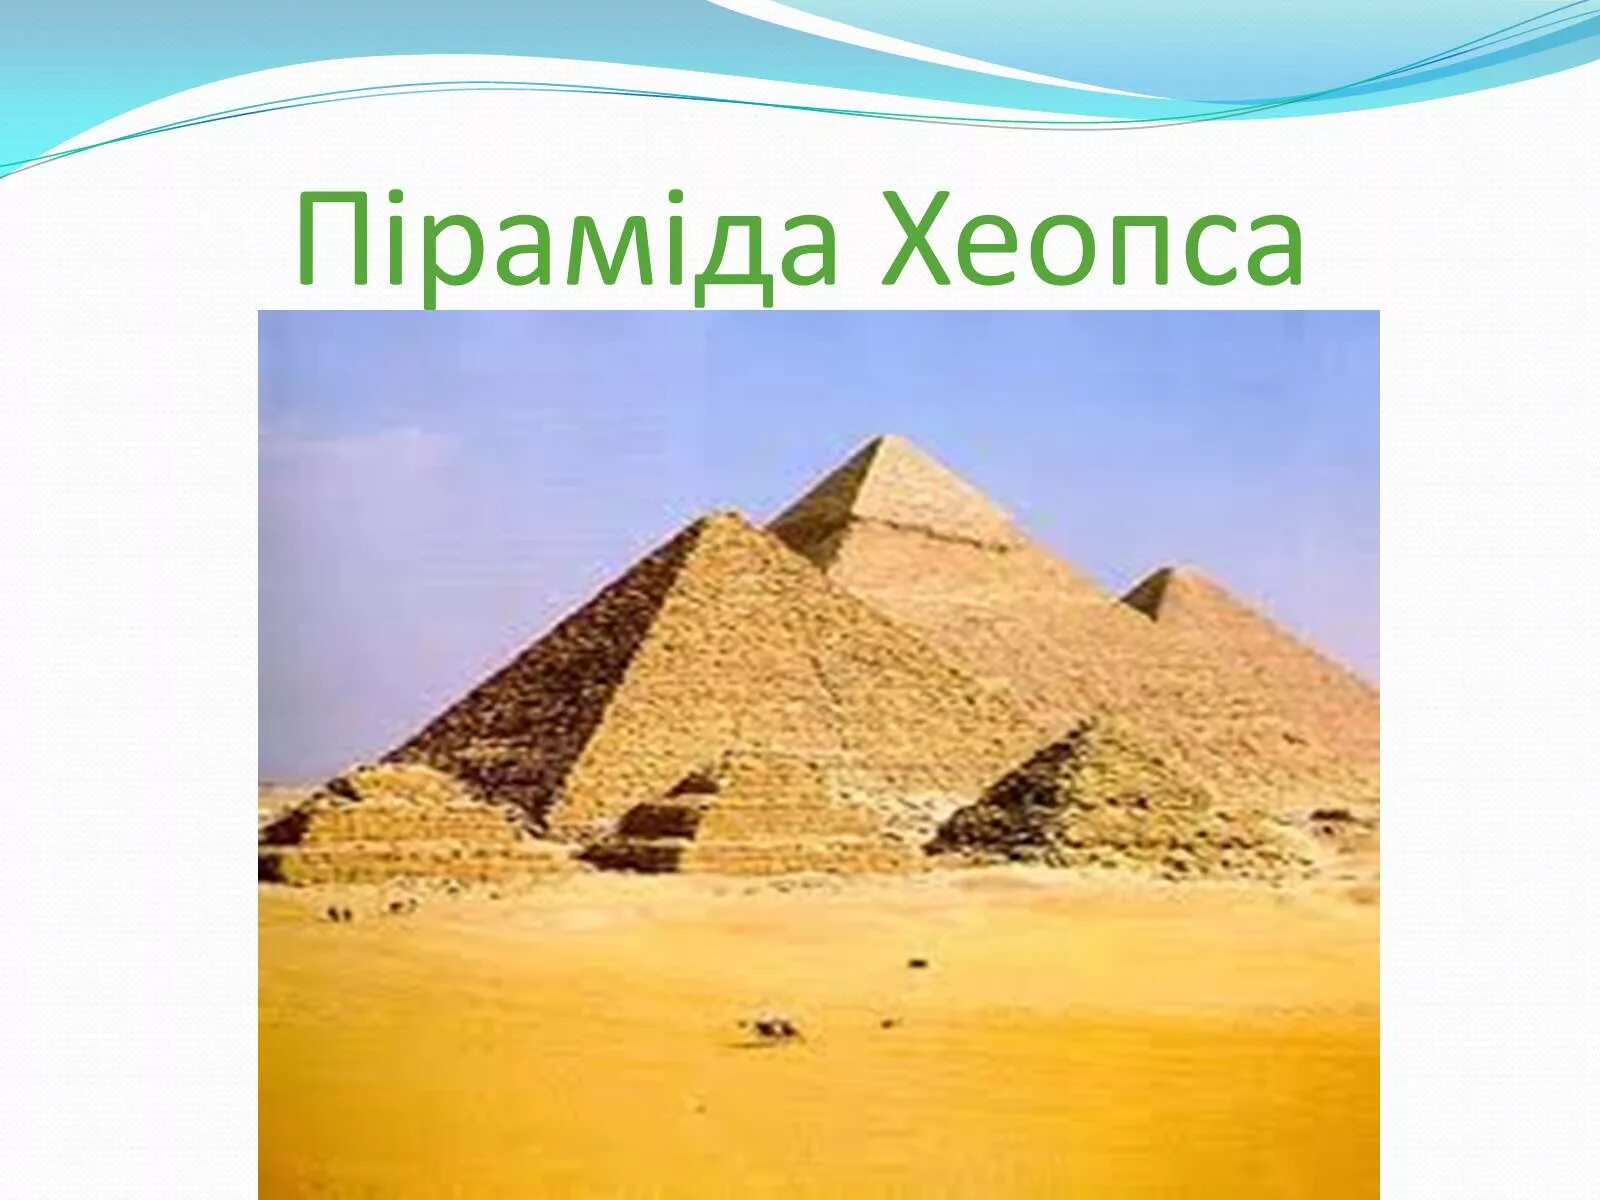 Пирамида Хеопса визитная карточка. Визитная карточка древнего Египта. Визитка Египта. Визитная карточка из древних стран Египта. Древние государства окружающий мир